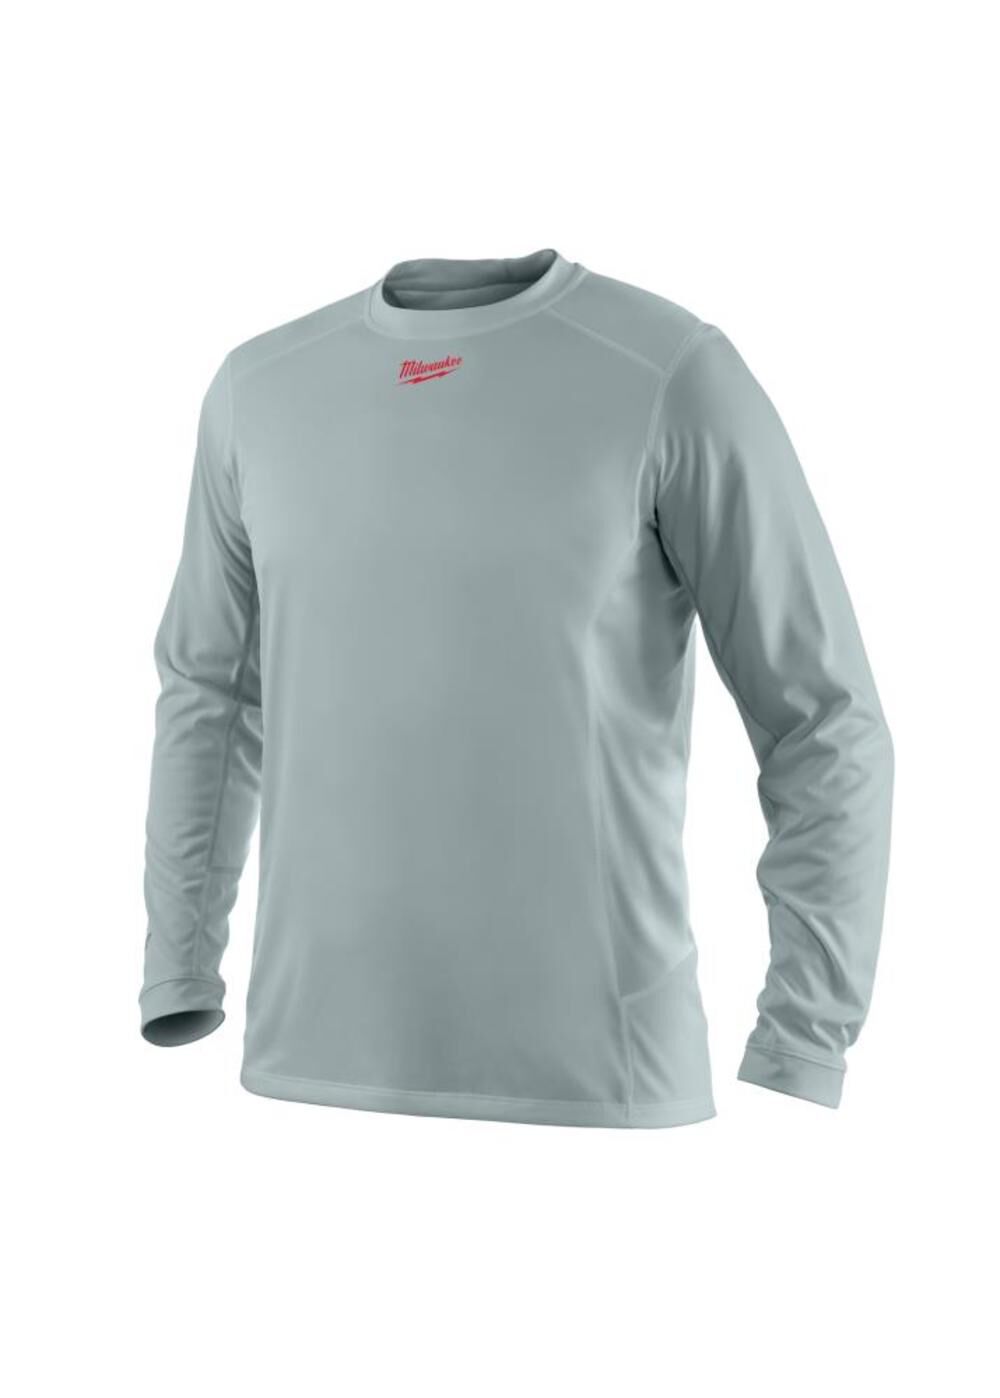 WorkSkin Light Weight Performance Long Sleeve Shirt - Gray - 2XL 411G-2X